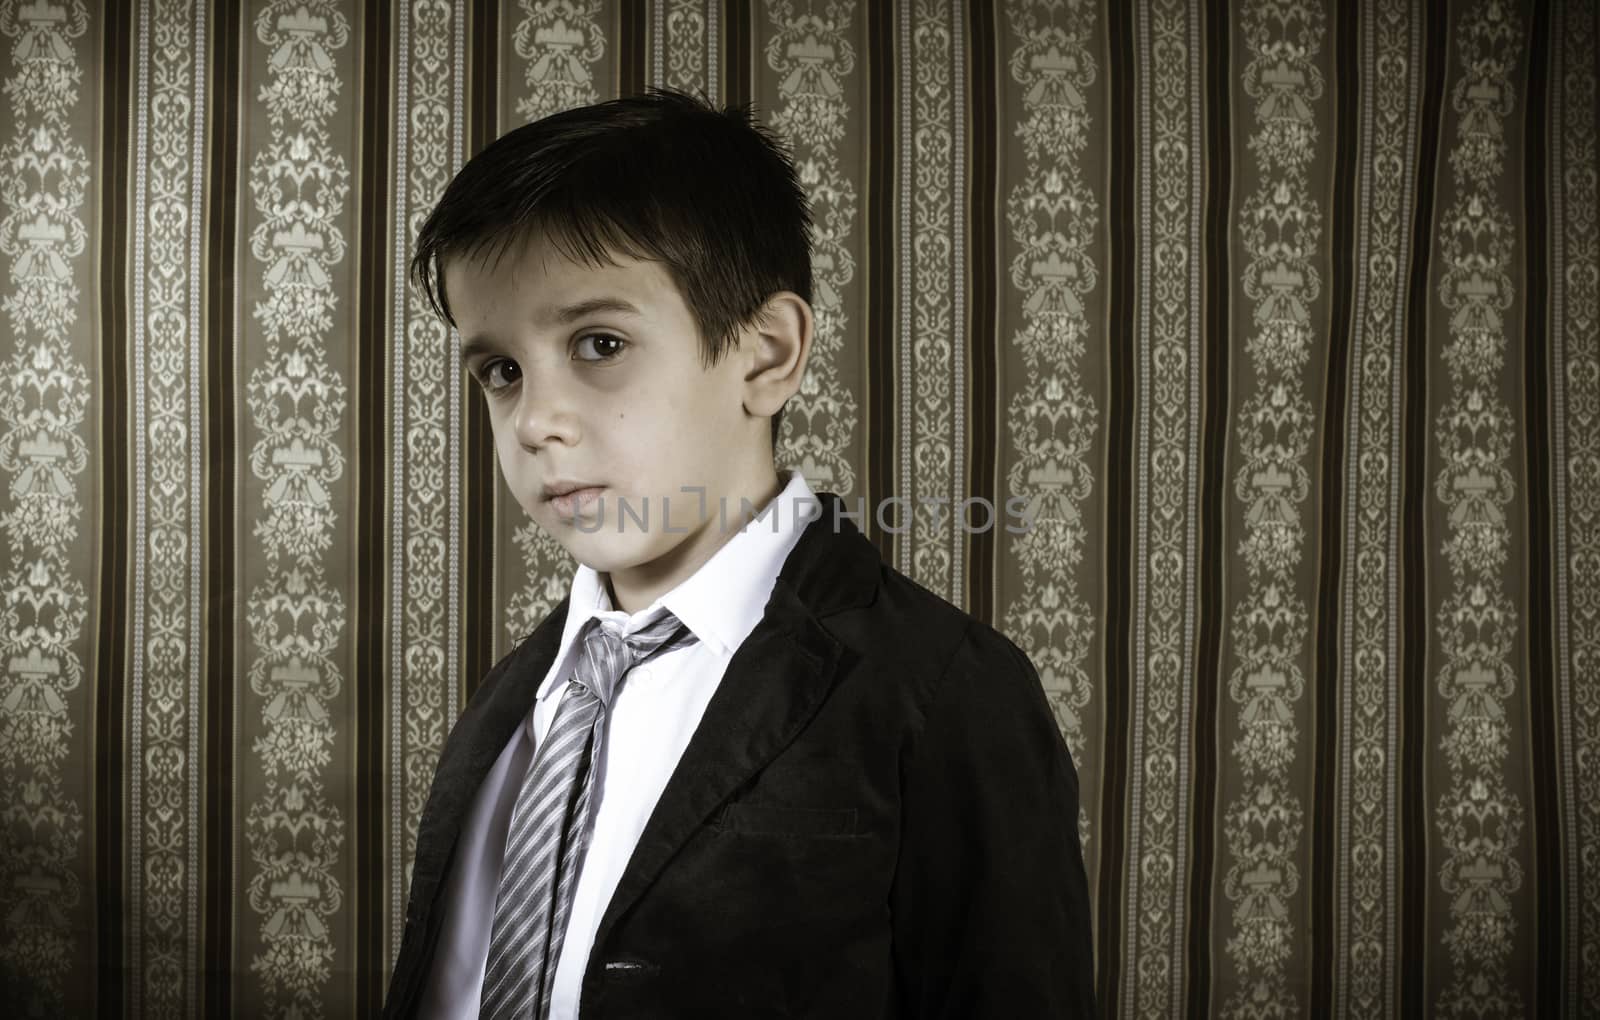 Boy in vintage black suit and tie